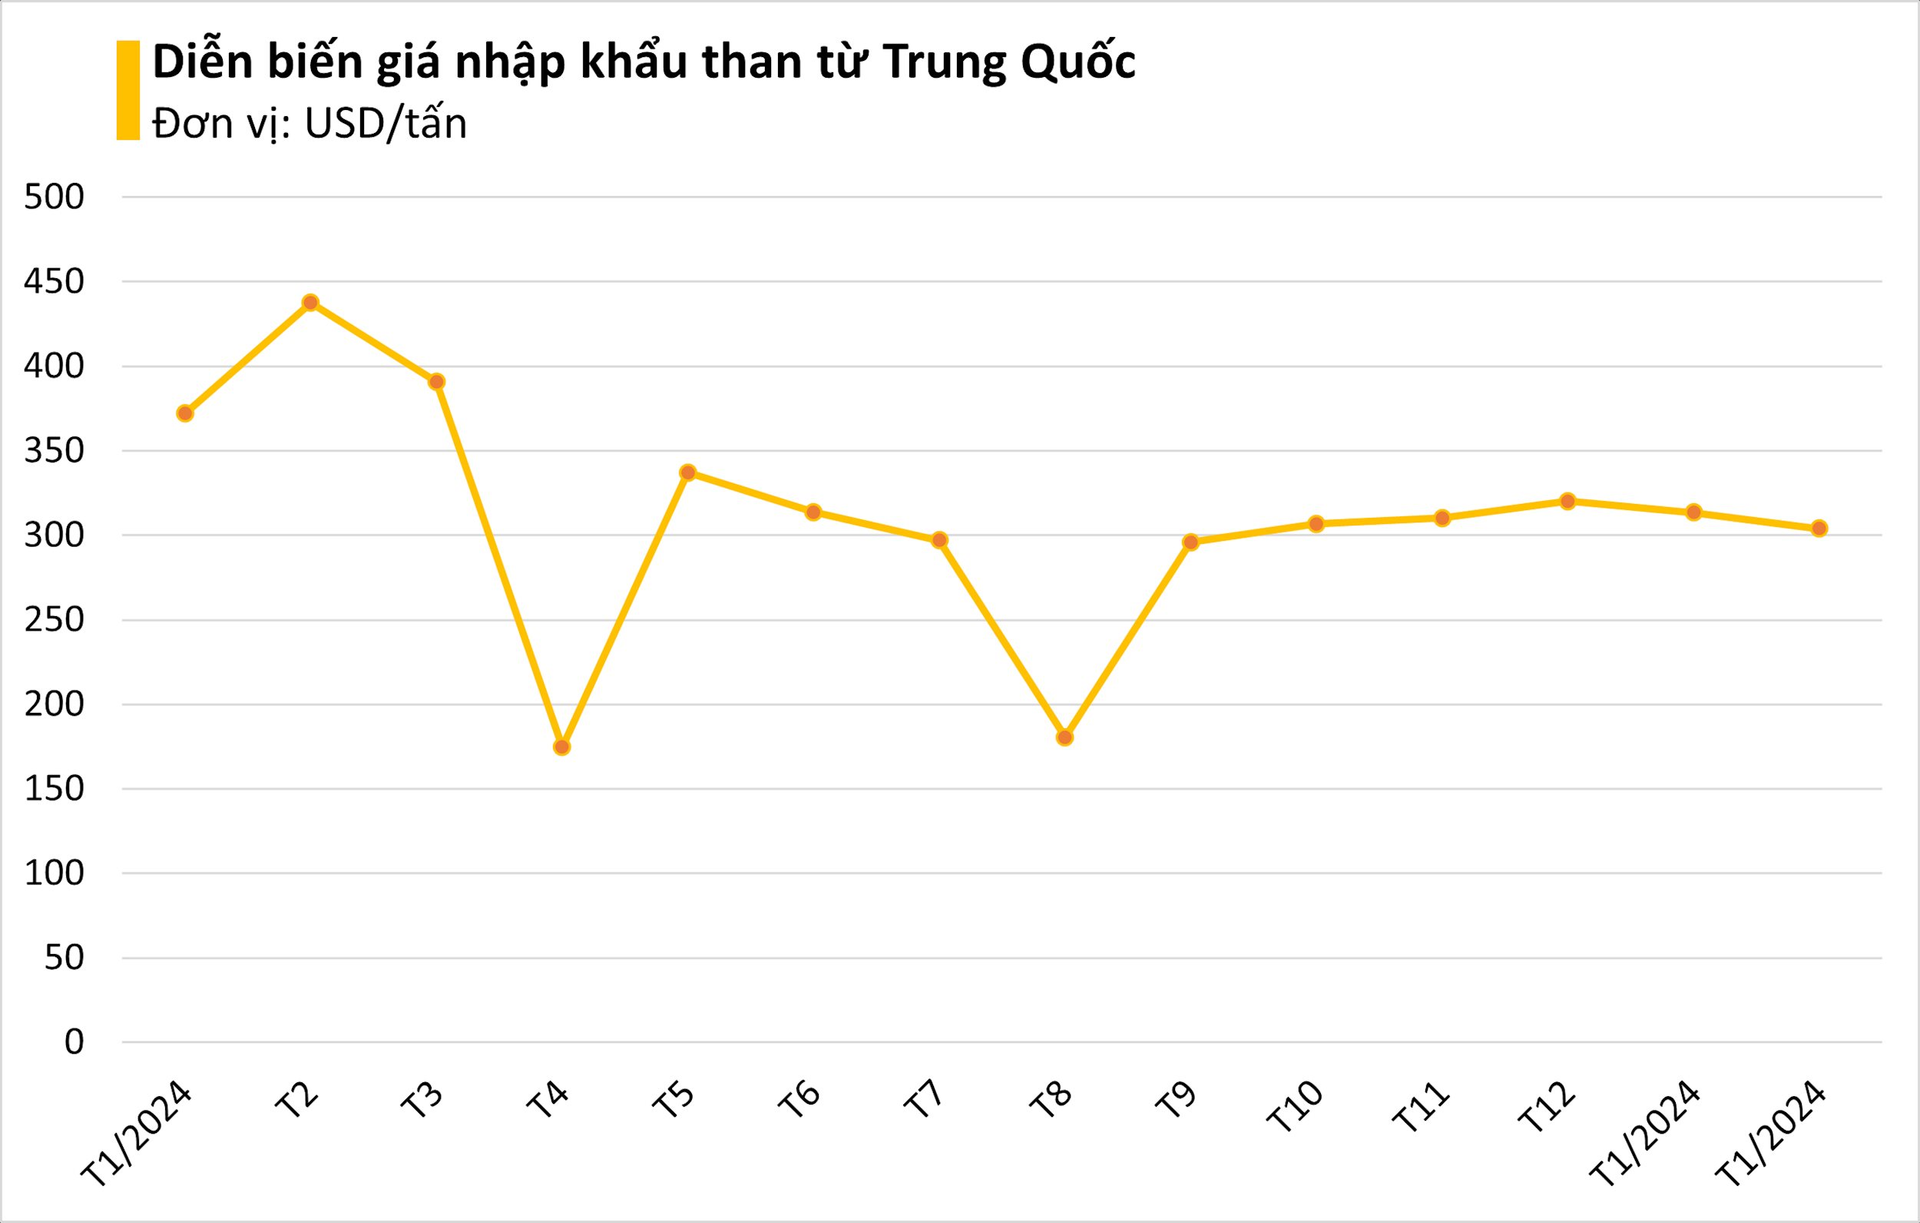 Giá giảm mạnh, Việt Nam chớp cơ hội nhập khẩu 